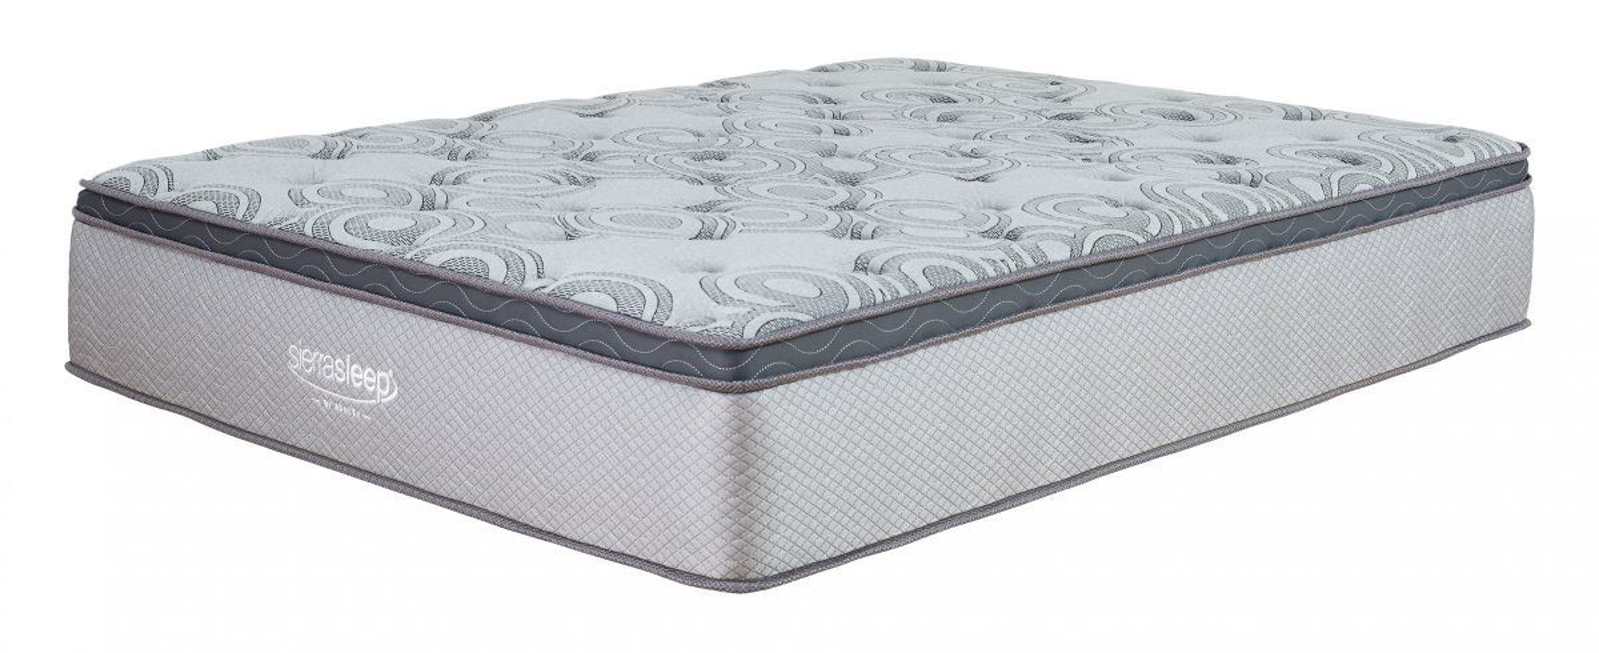 augusta queen mattress reviews